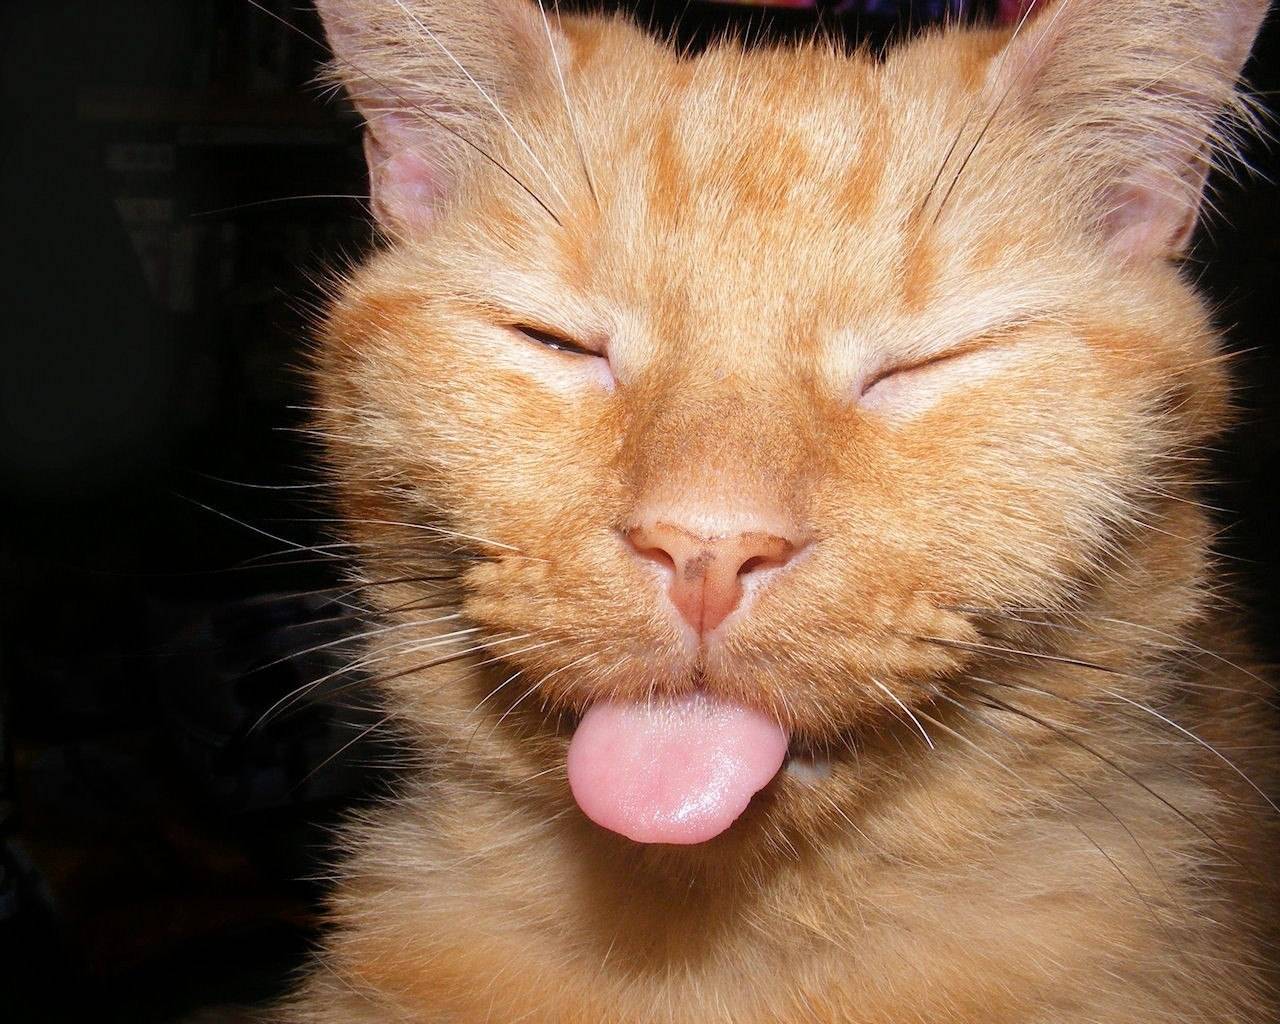 Почему кошки высовывают язык?